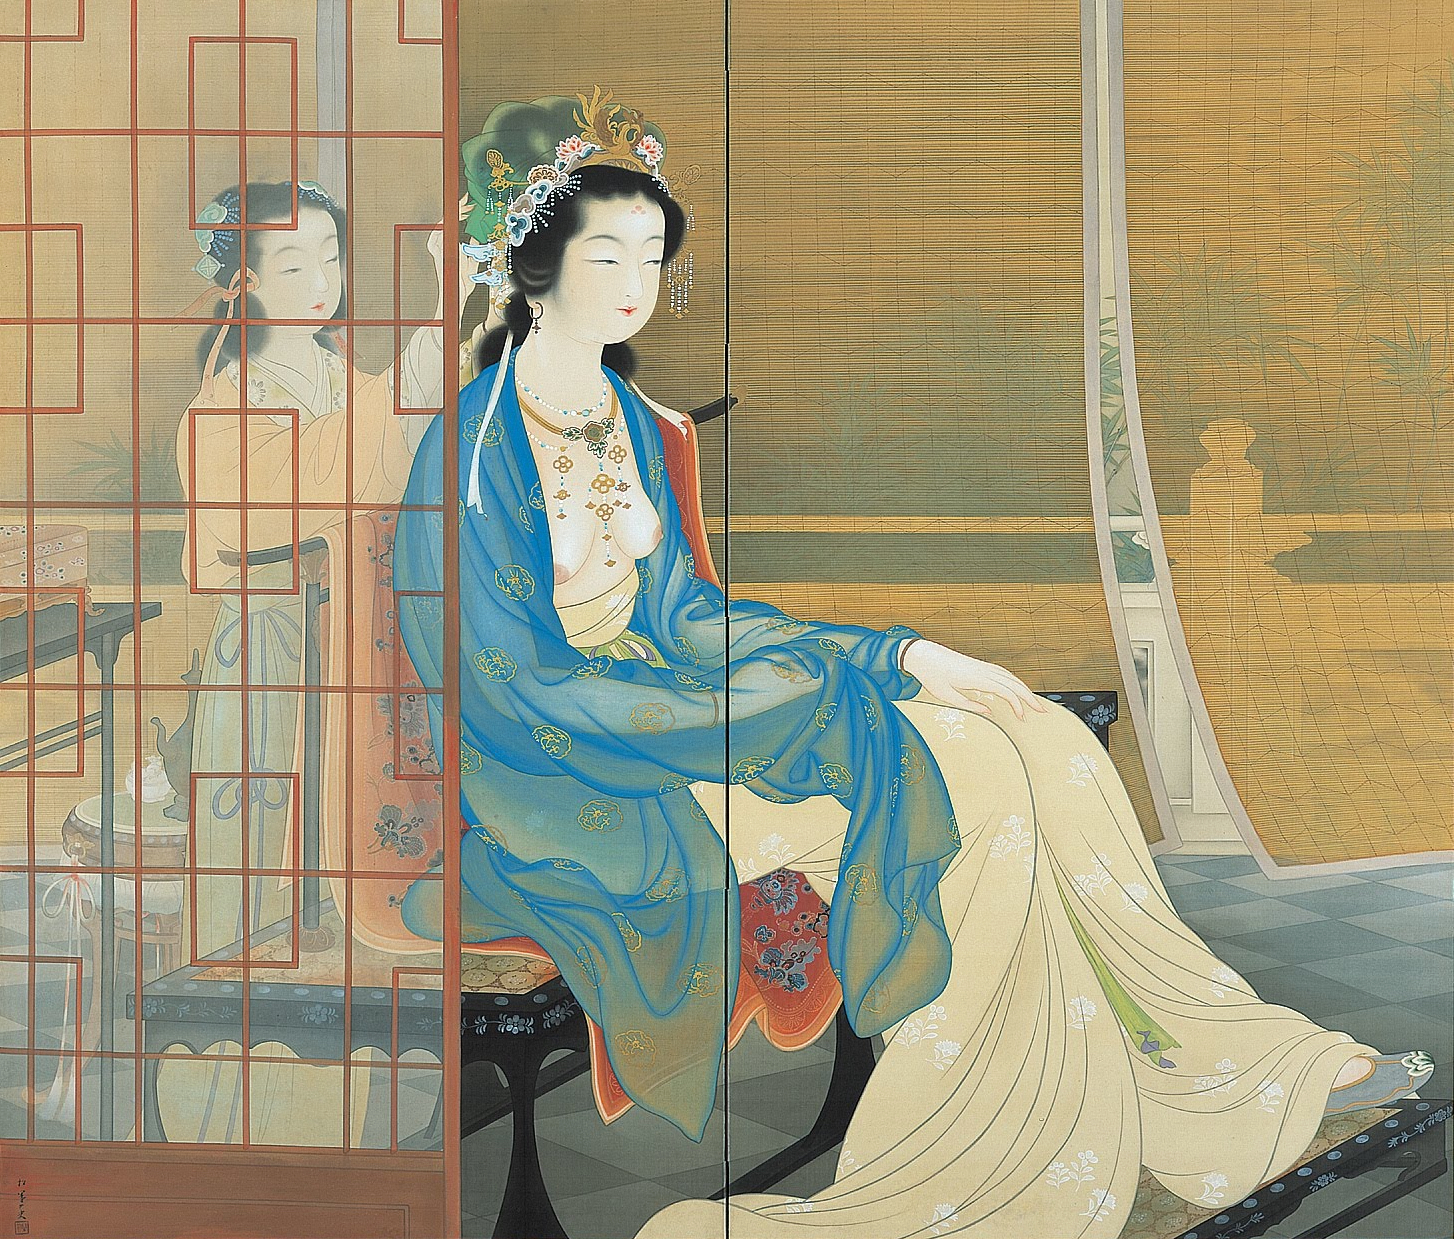 杨贵妃 by 上村 松园 - 1922 - 189 x 161 cm 